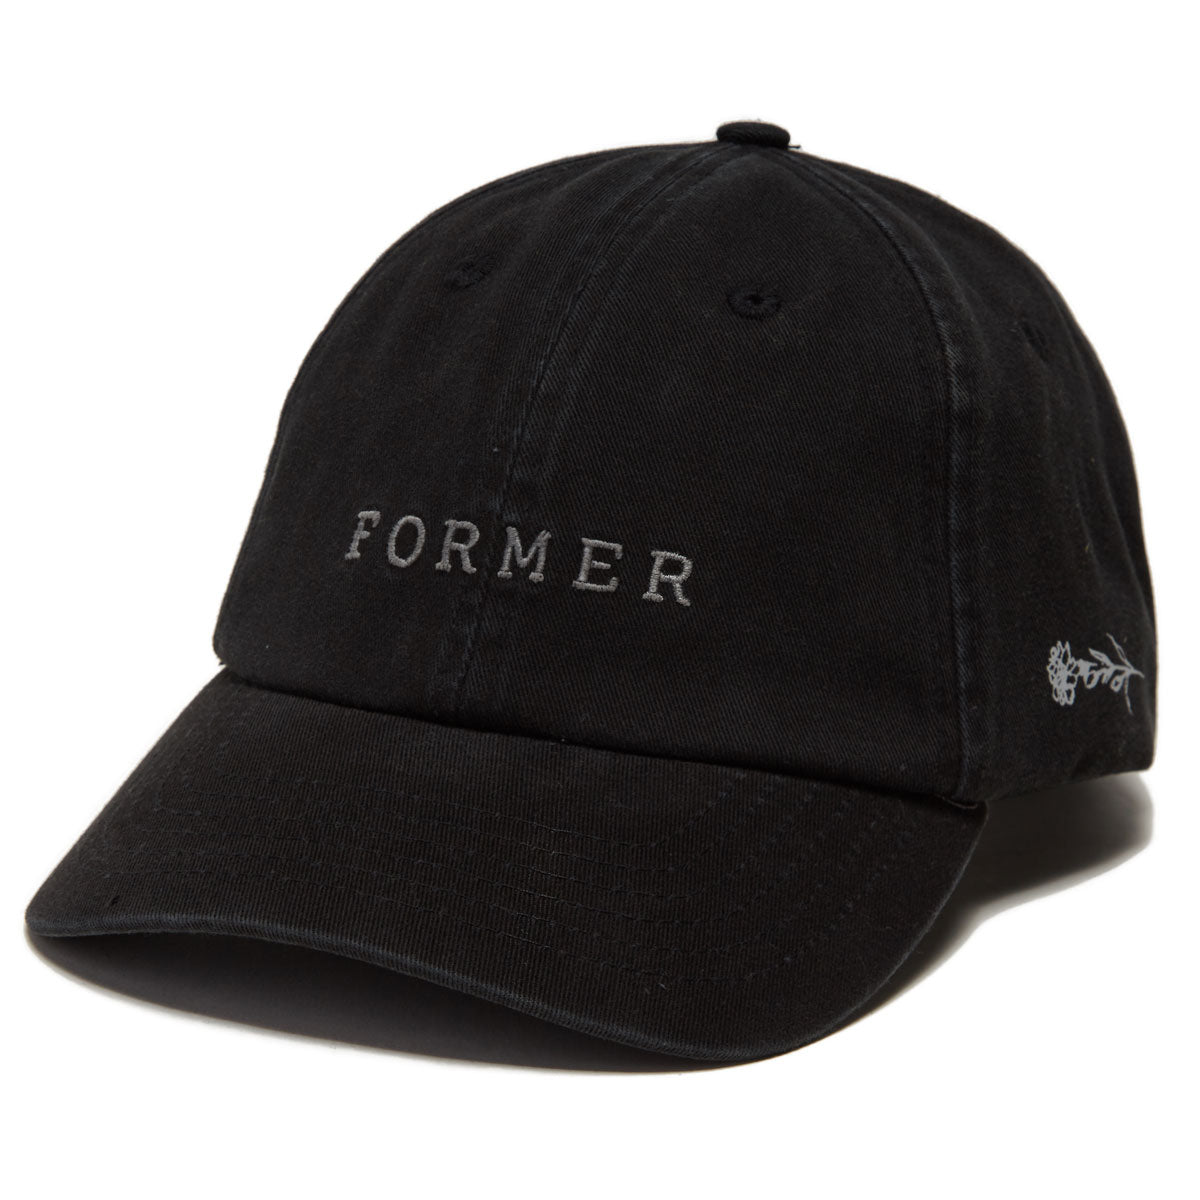 Former Shifting Hat - Black image 1